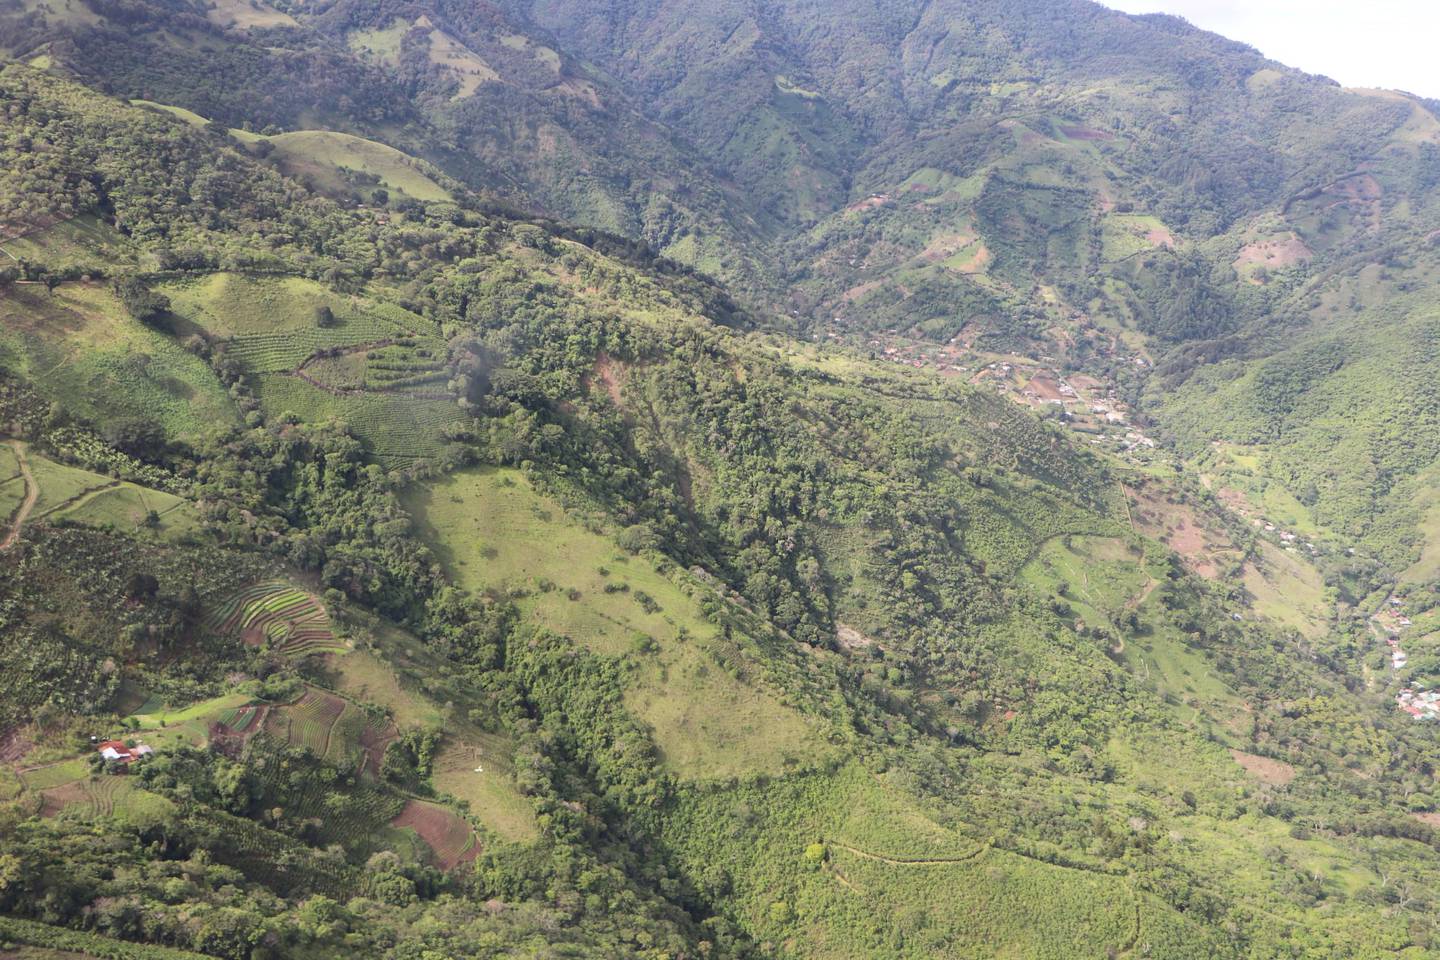 Un sobrevuelo por lo alto del cerro Tapezco, en Santa Ana, el mes pasado, permitió a la CNE descartar por ahora riesgos para los poblados al pie de la montaña. Foto: Cortesía CNE.